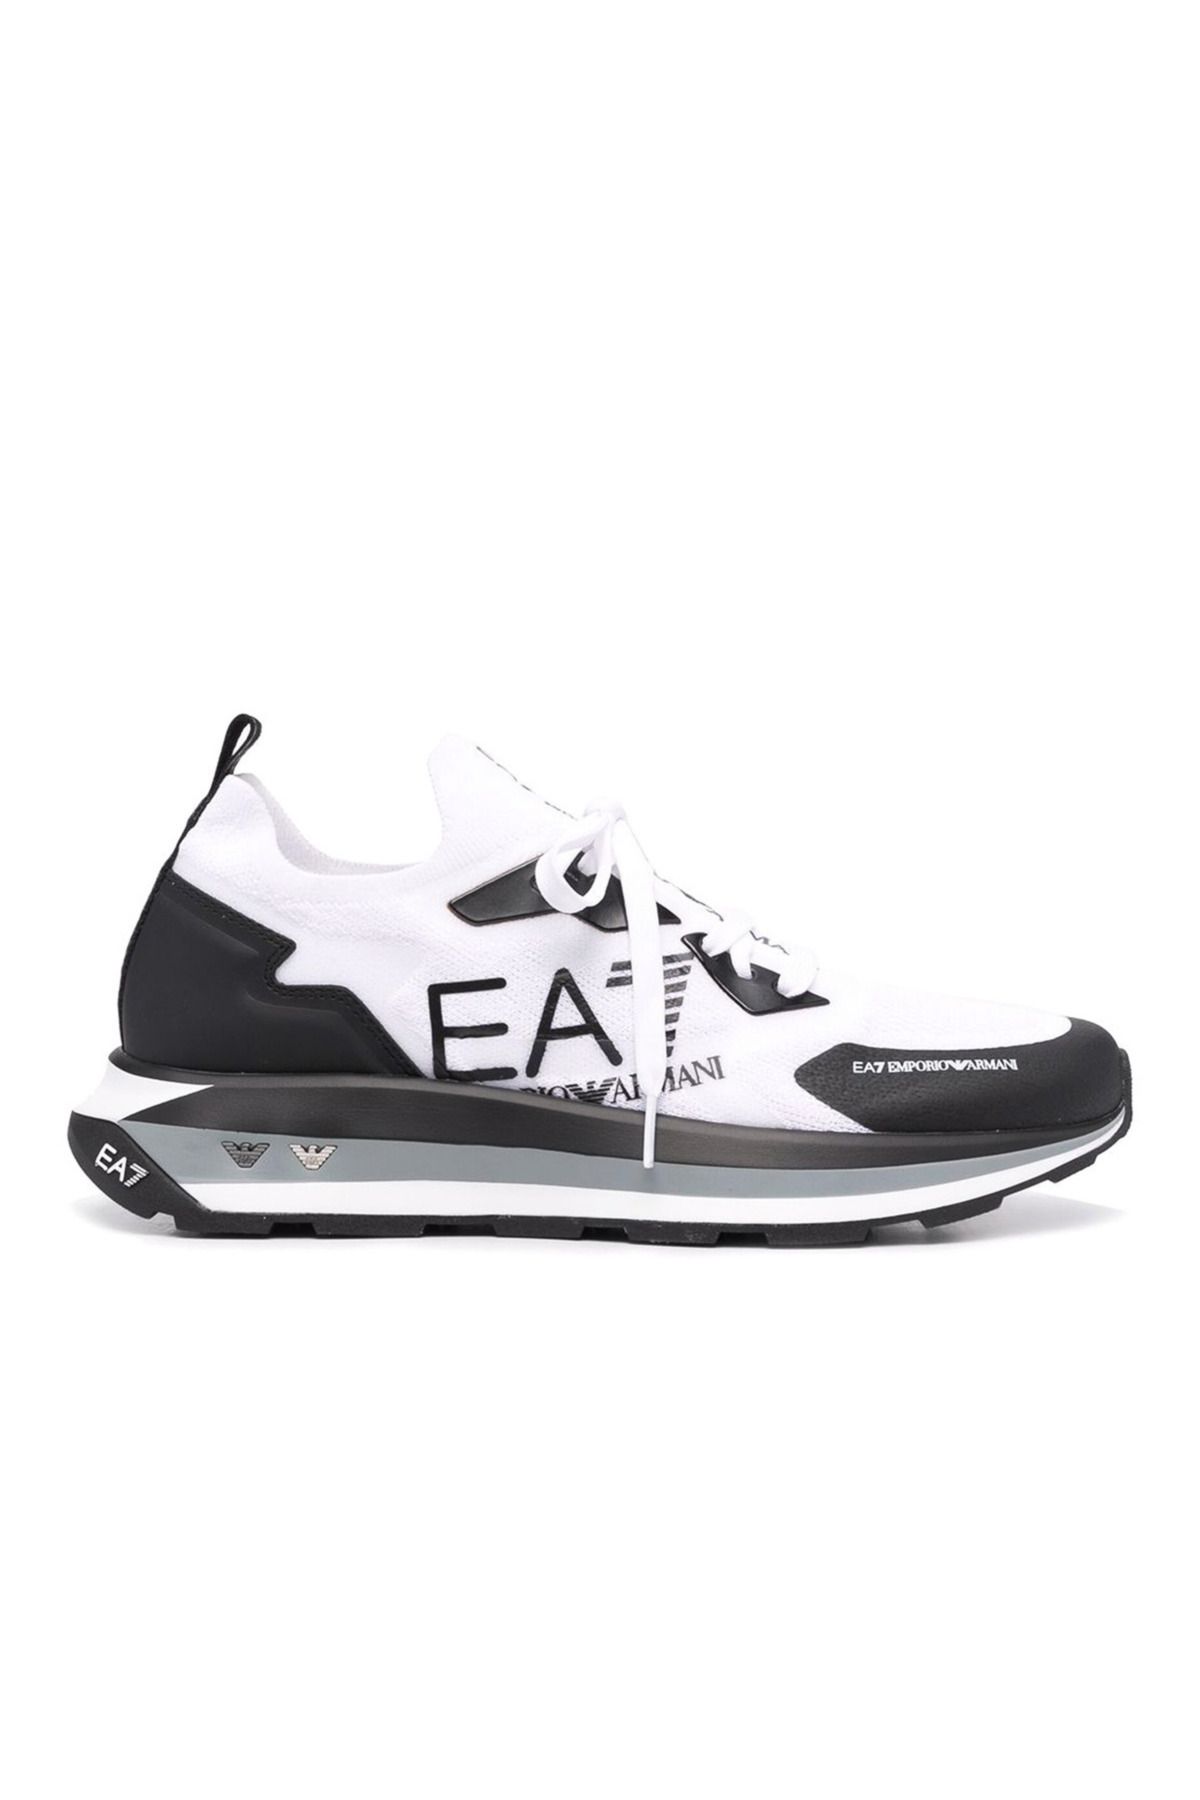 Emporio Armani Erkek Günlük Ayakkabı X8x113 Xk269 Q708